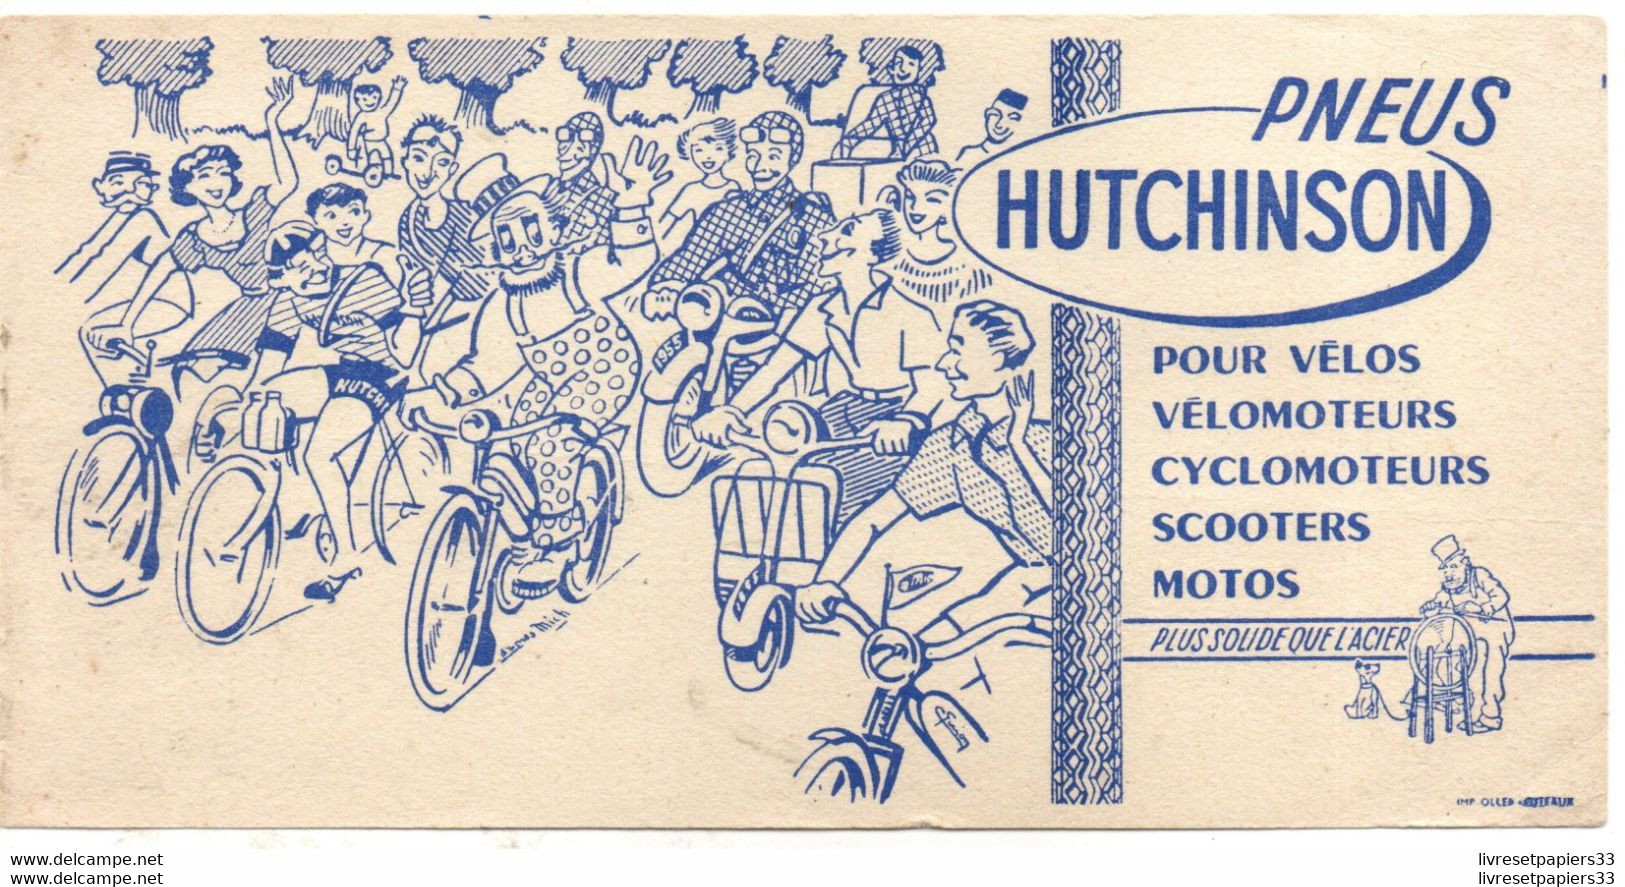 Ancien buvard publicitaire Hutchinson pneus vélo moto N Fortin et fils Paris 